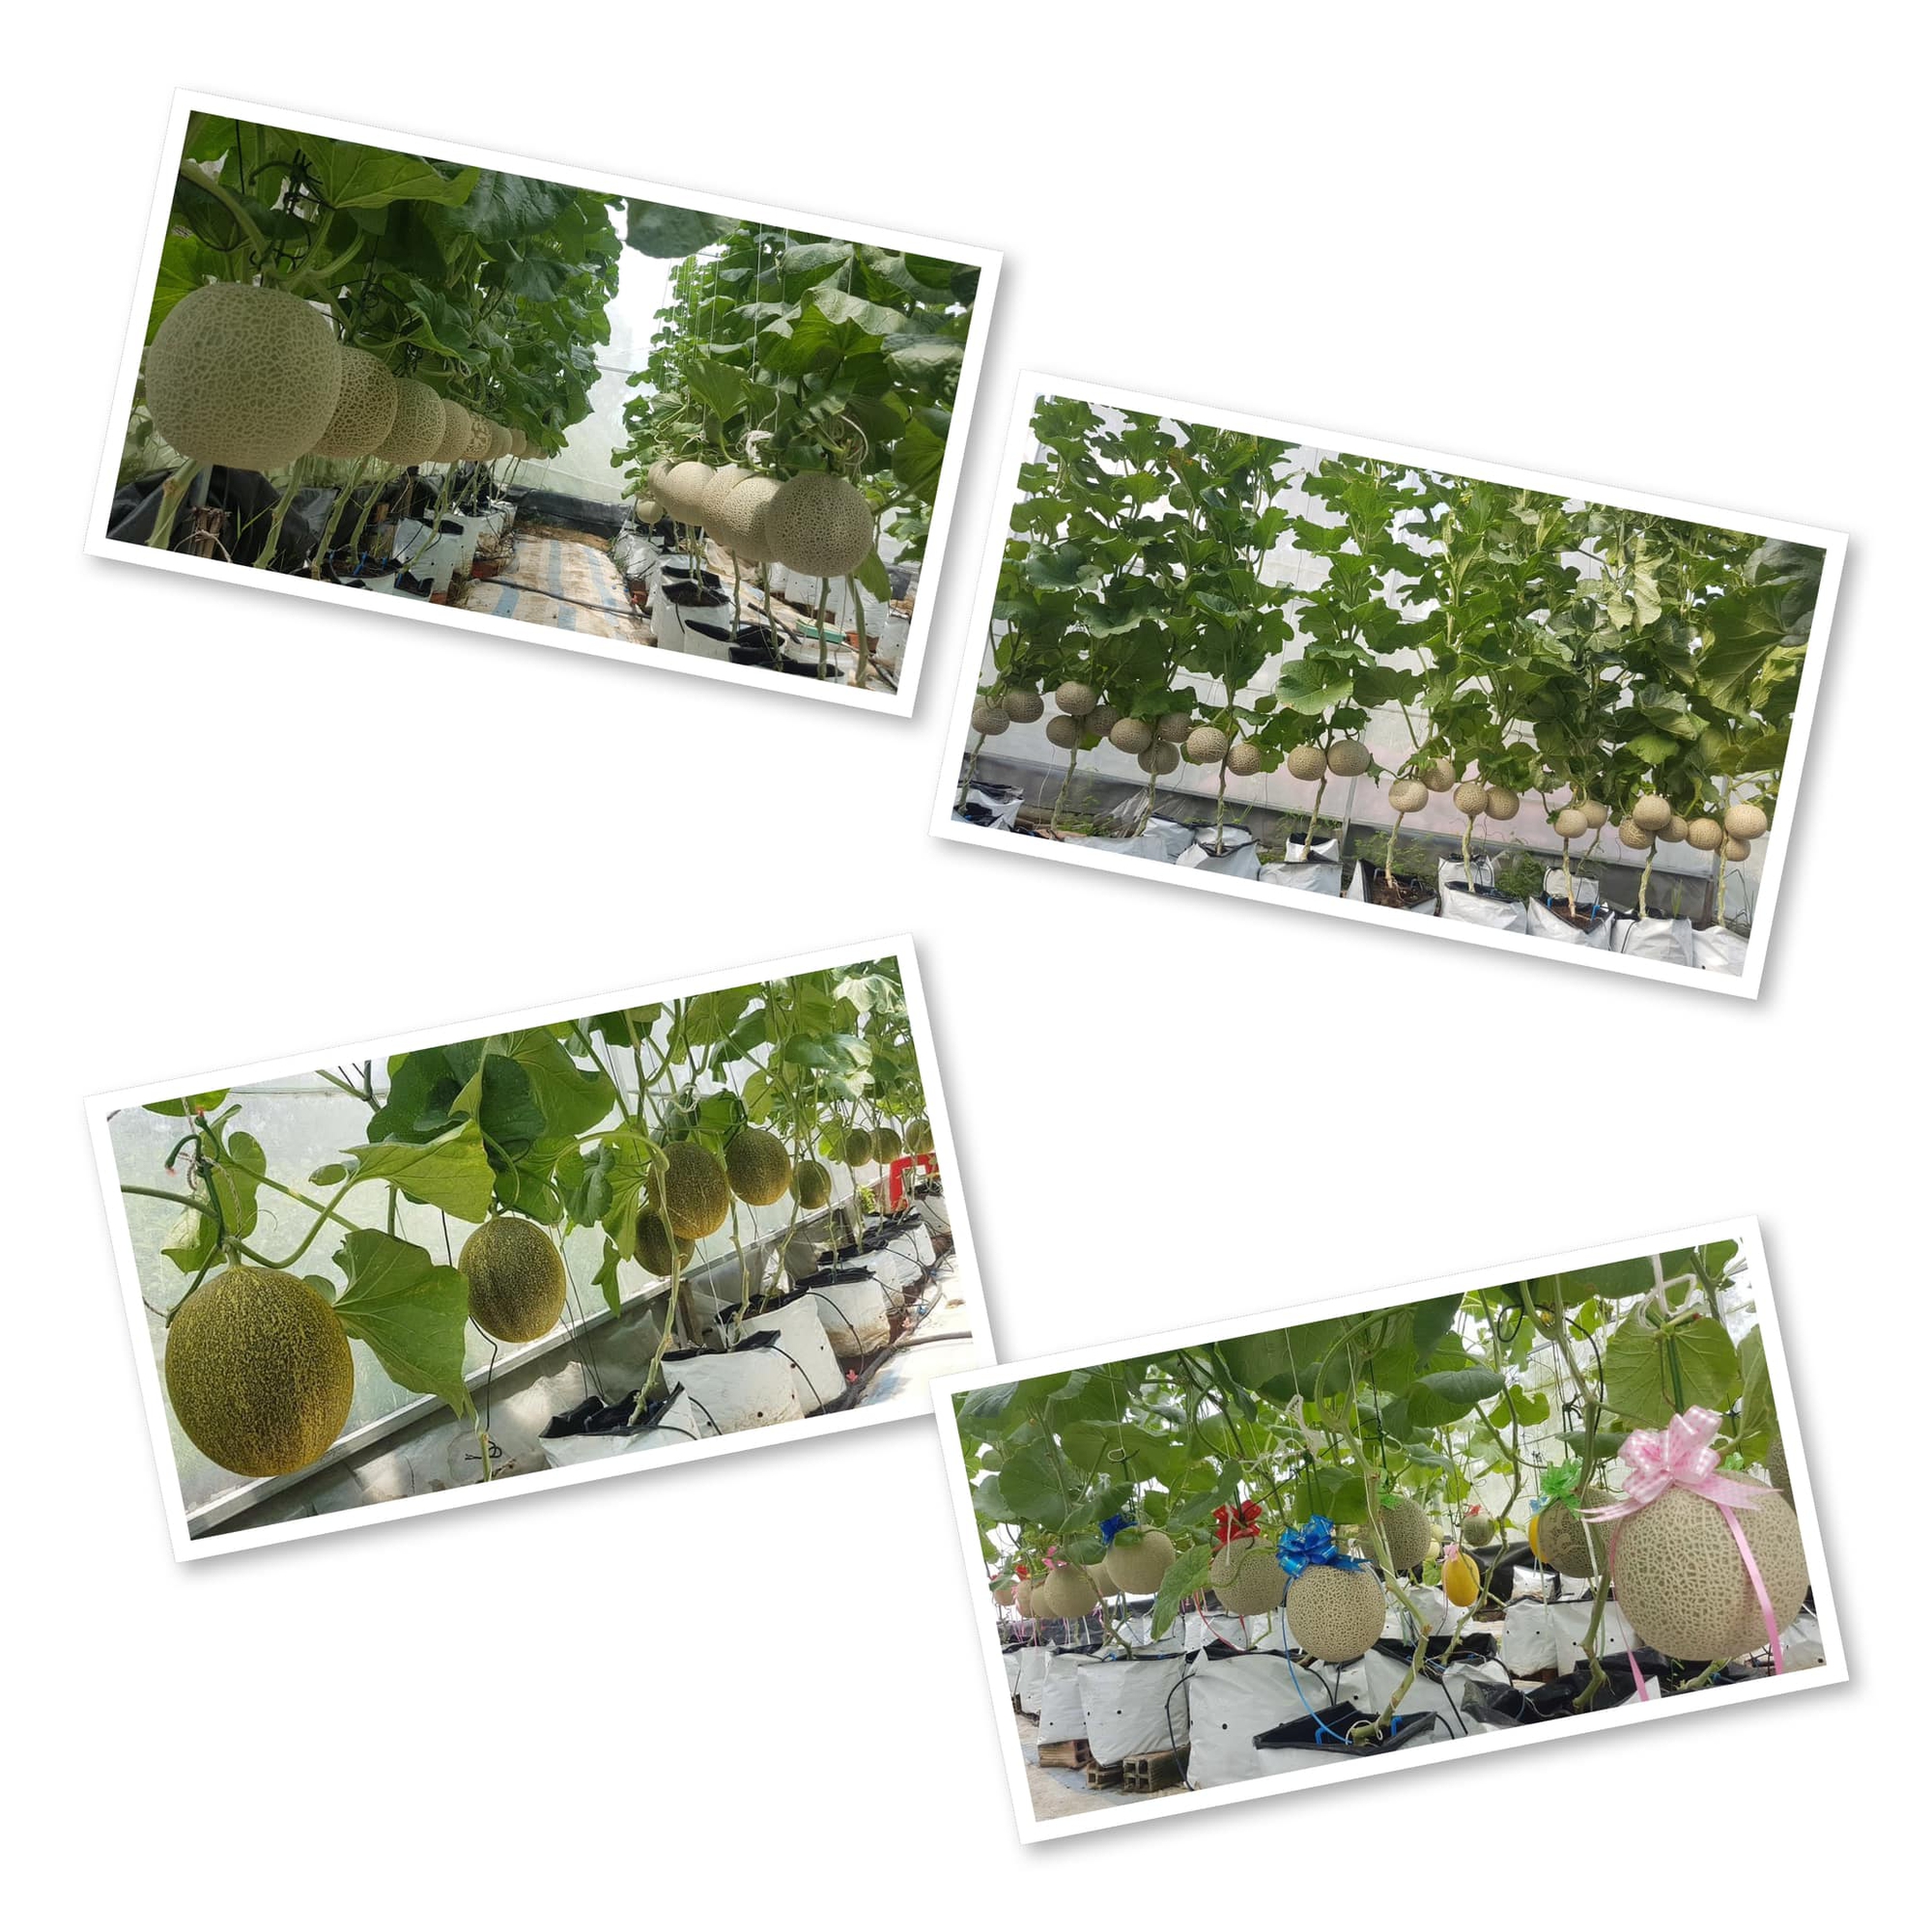 Cách trồng dưa lưới thành công trong khu vườn diện tích nhỏ 30m² - Ảnh 8.